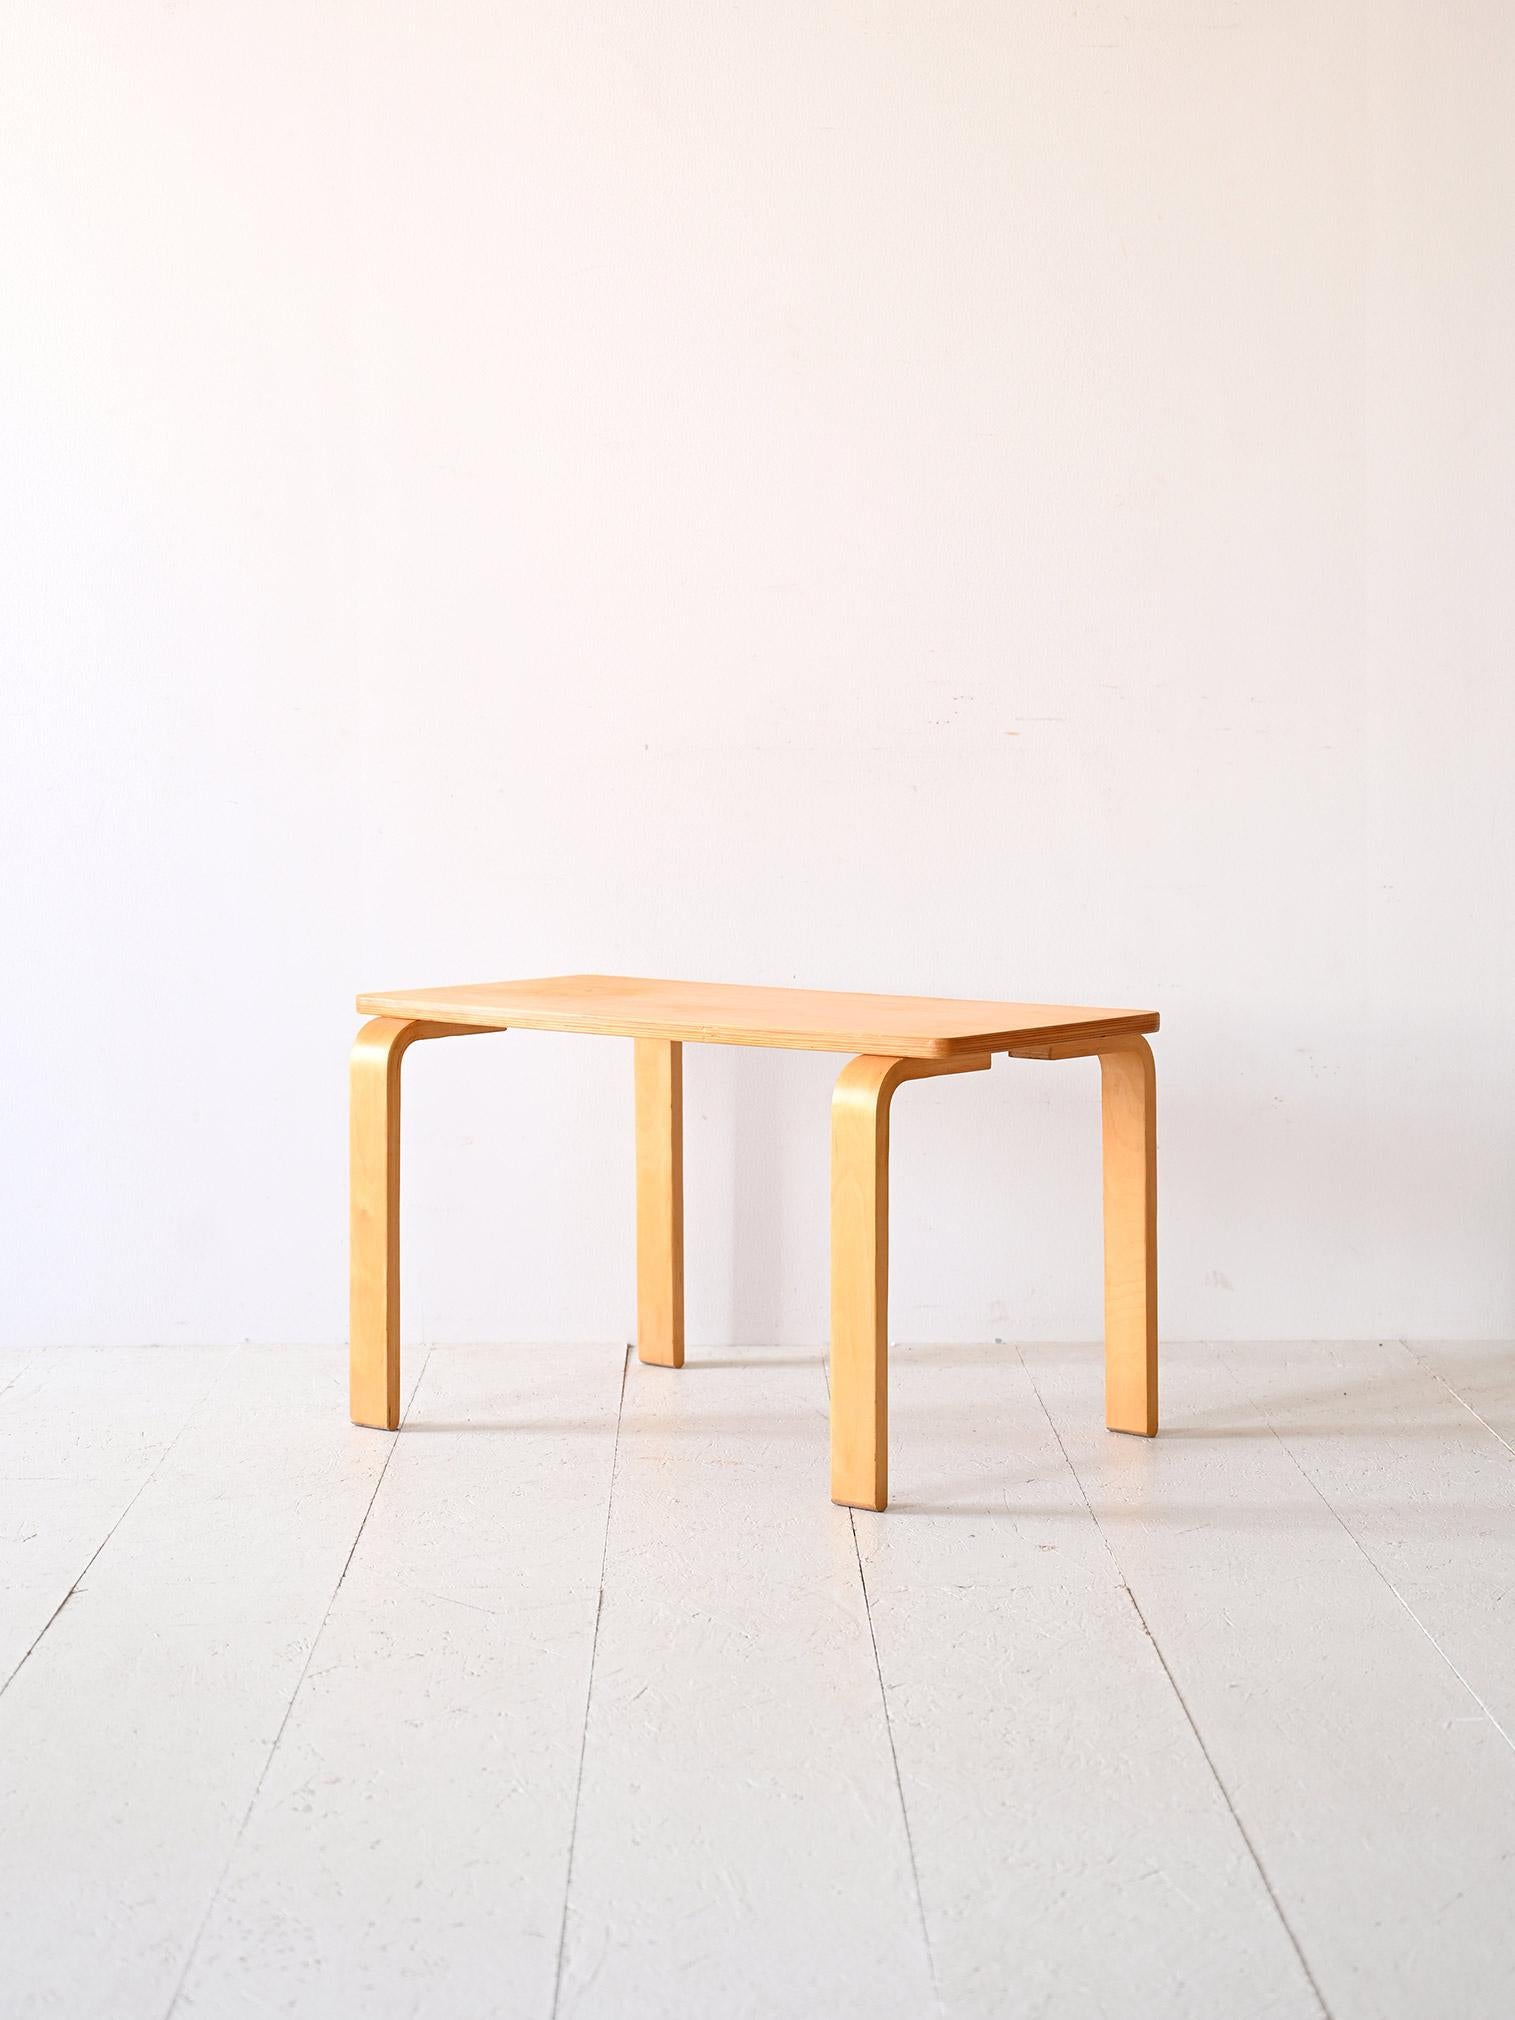 Finnish Coffee Table attrib. a Alvar Aalto disegnato negli anni ‘30